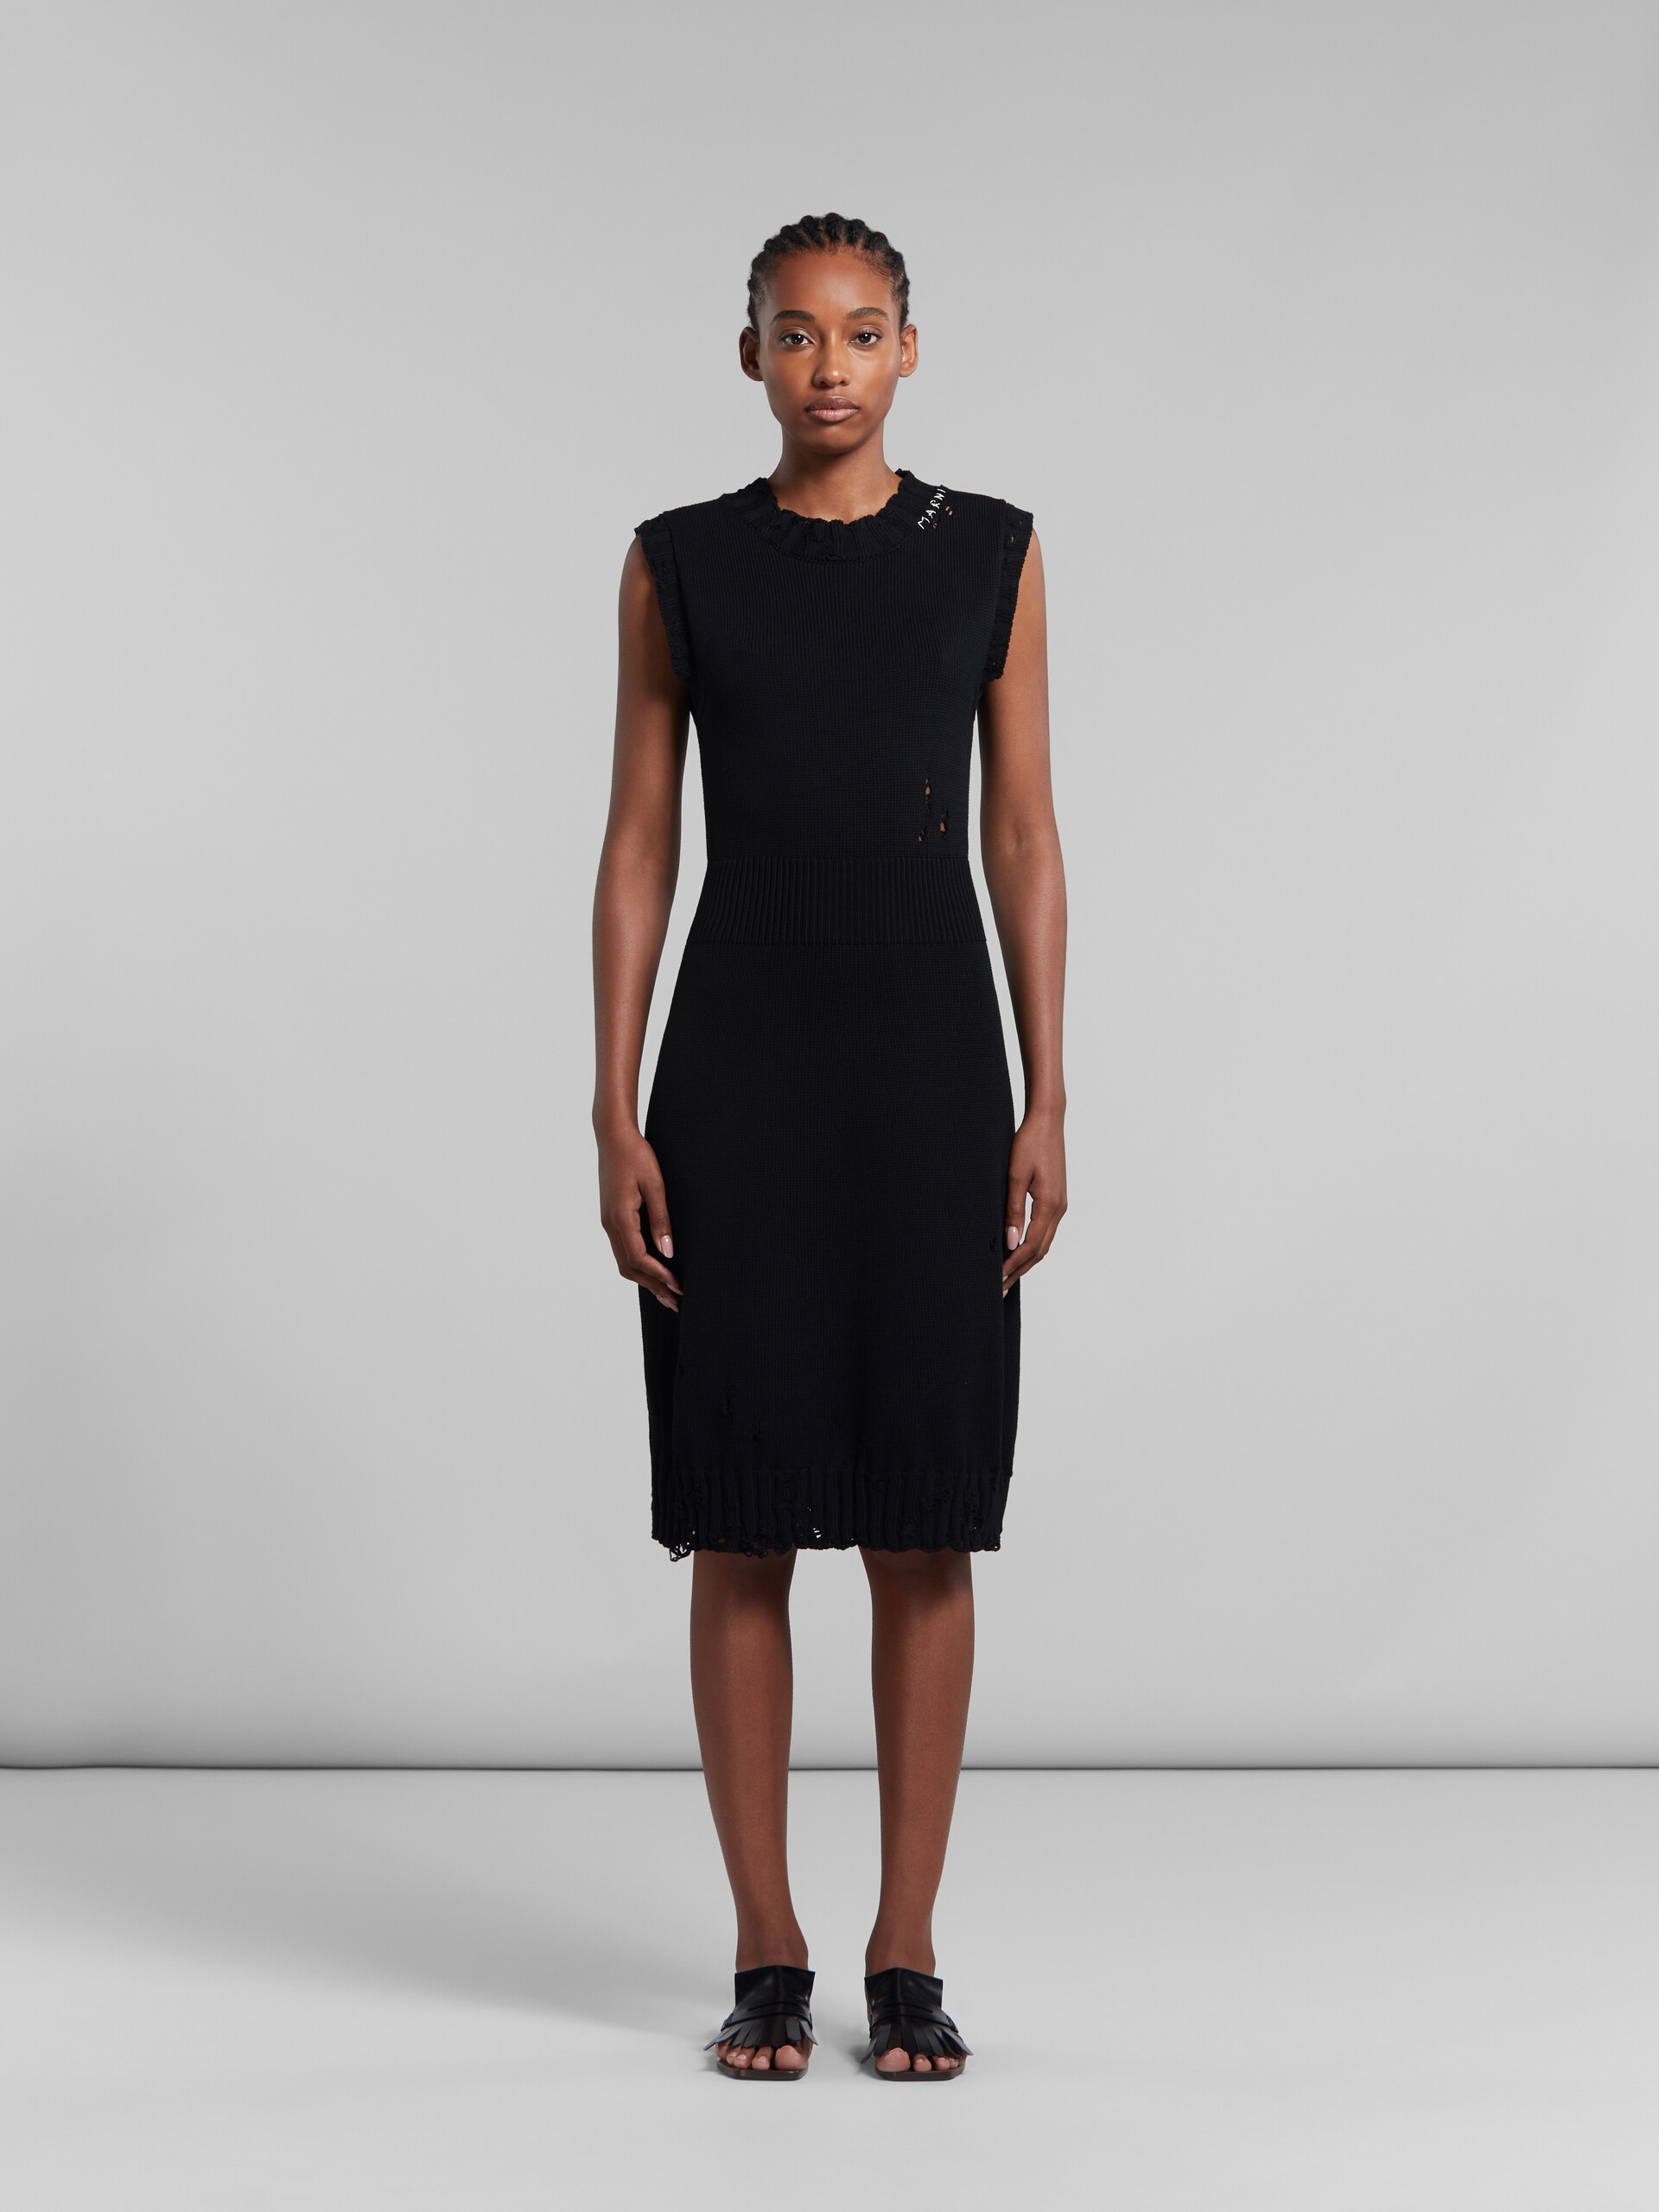 ブラック ディシュベルドコットン製ニットドレス - ドレス - Image 2